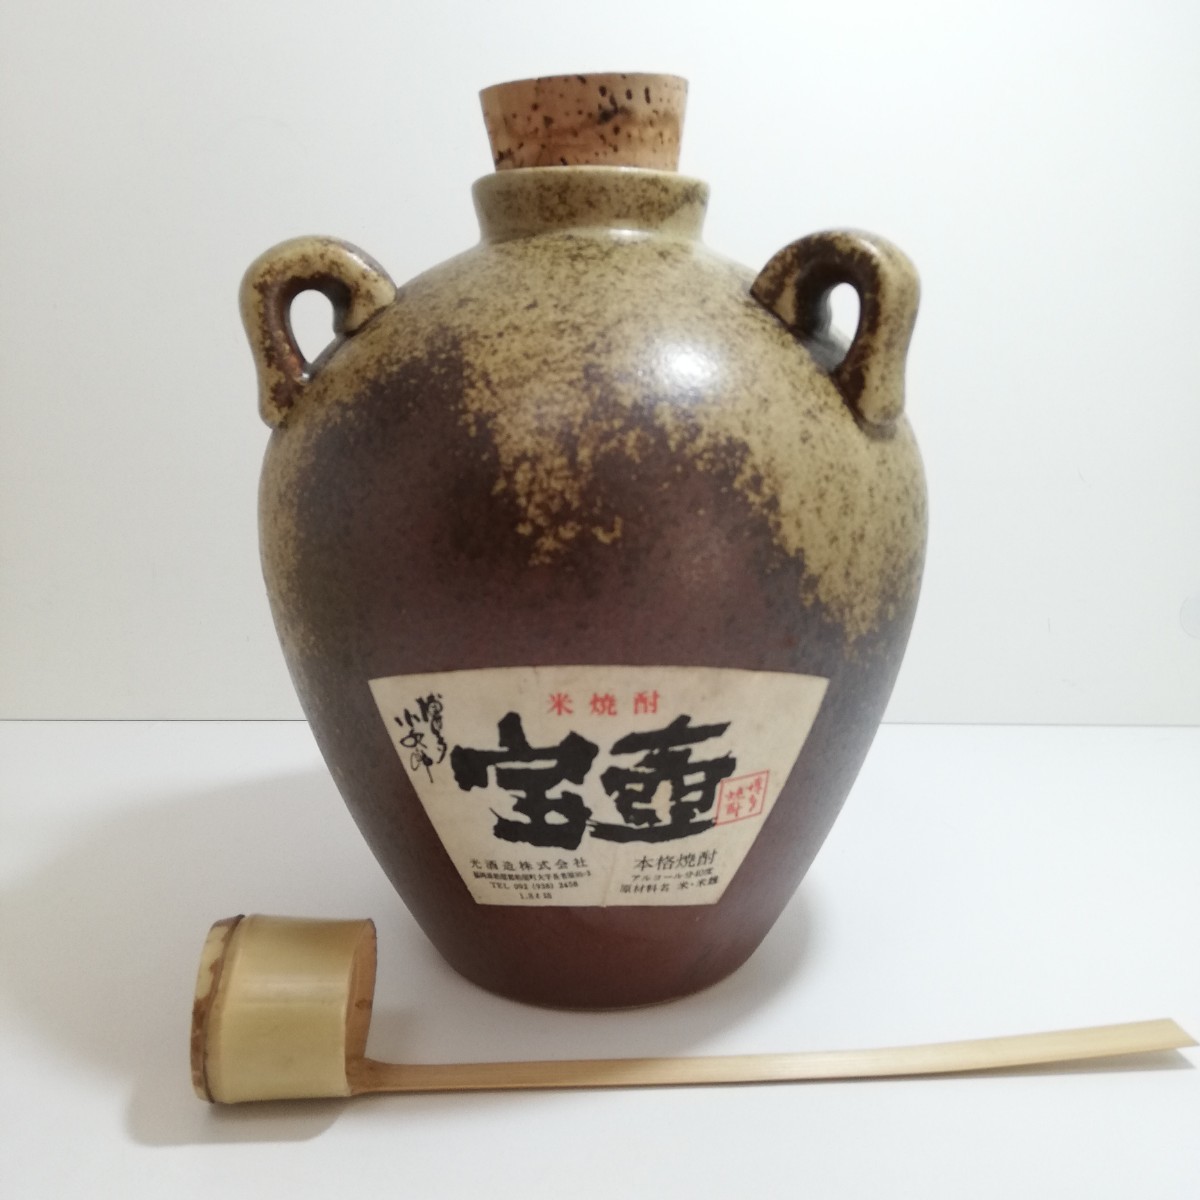 【空瓶】 博多焼酎 宝壺 空酒ボトル 1.8L 陶器ボトル 焼酎 容器 _画像1